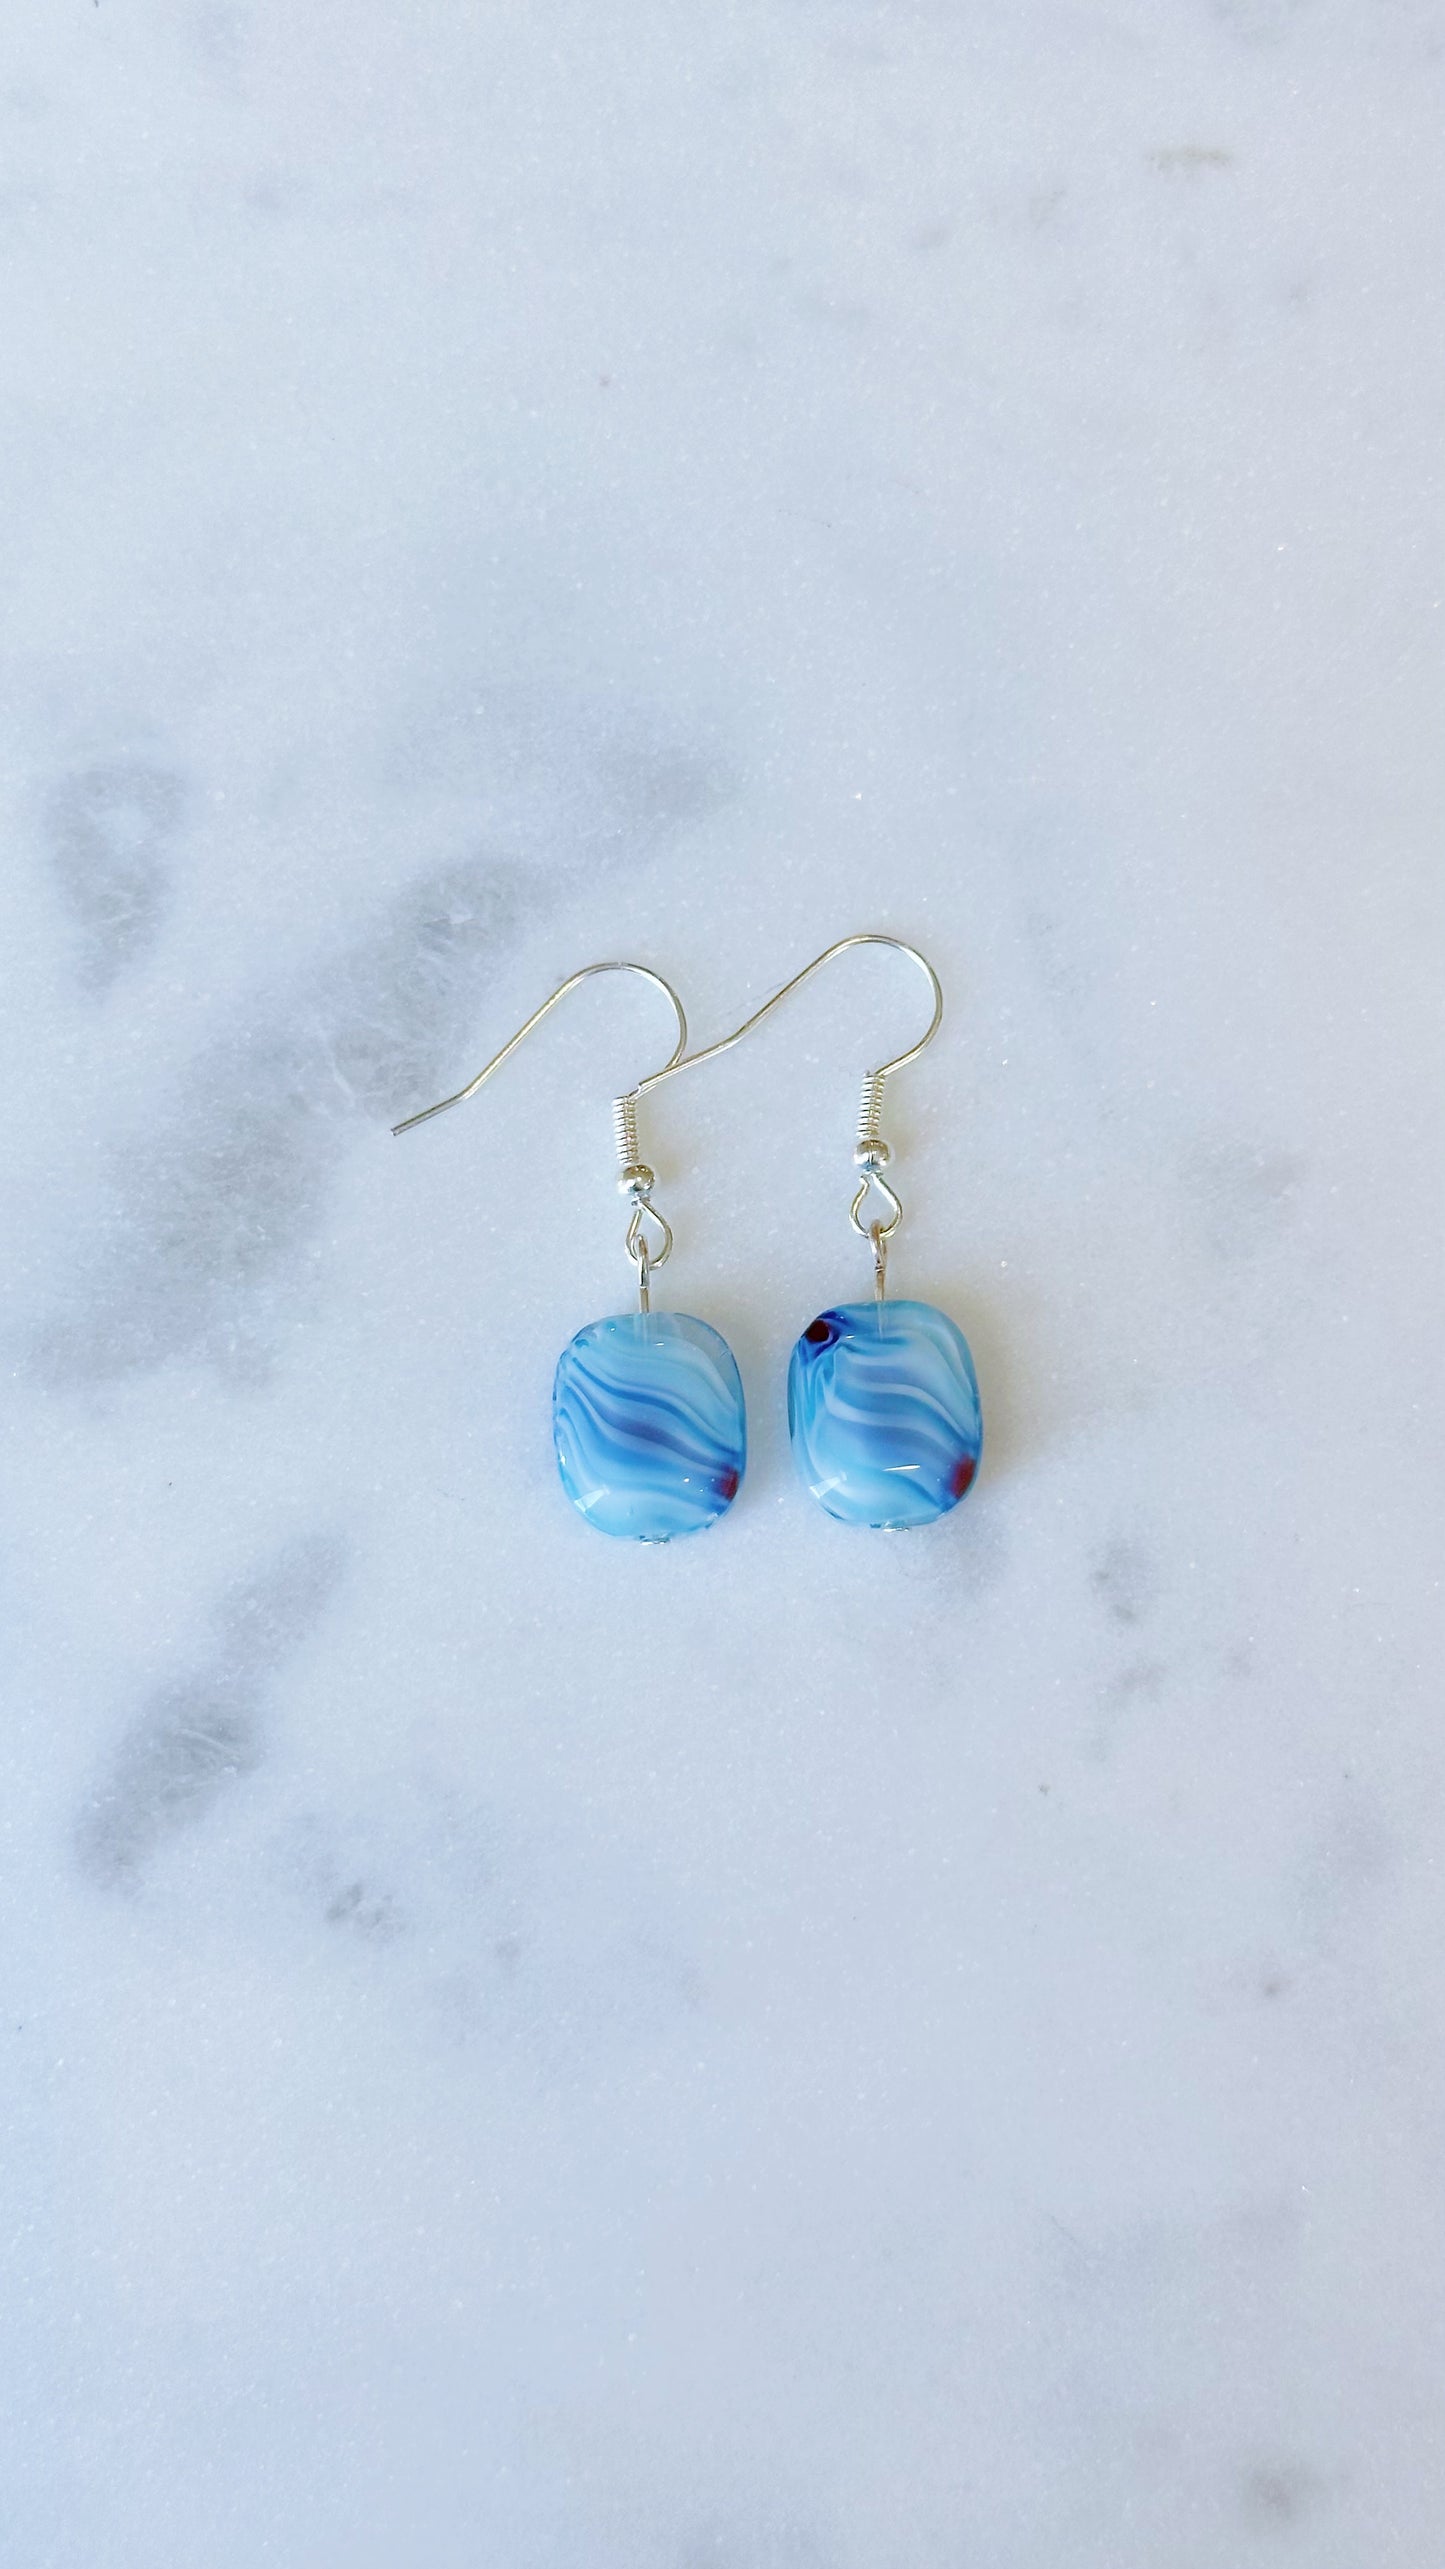 Blue glass swirl dangle earrings